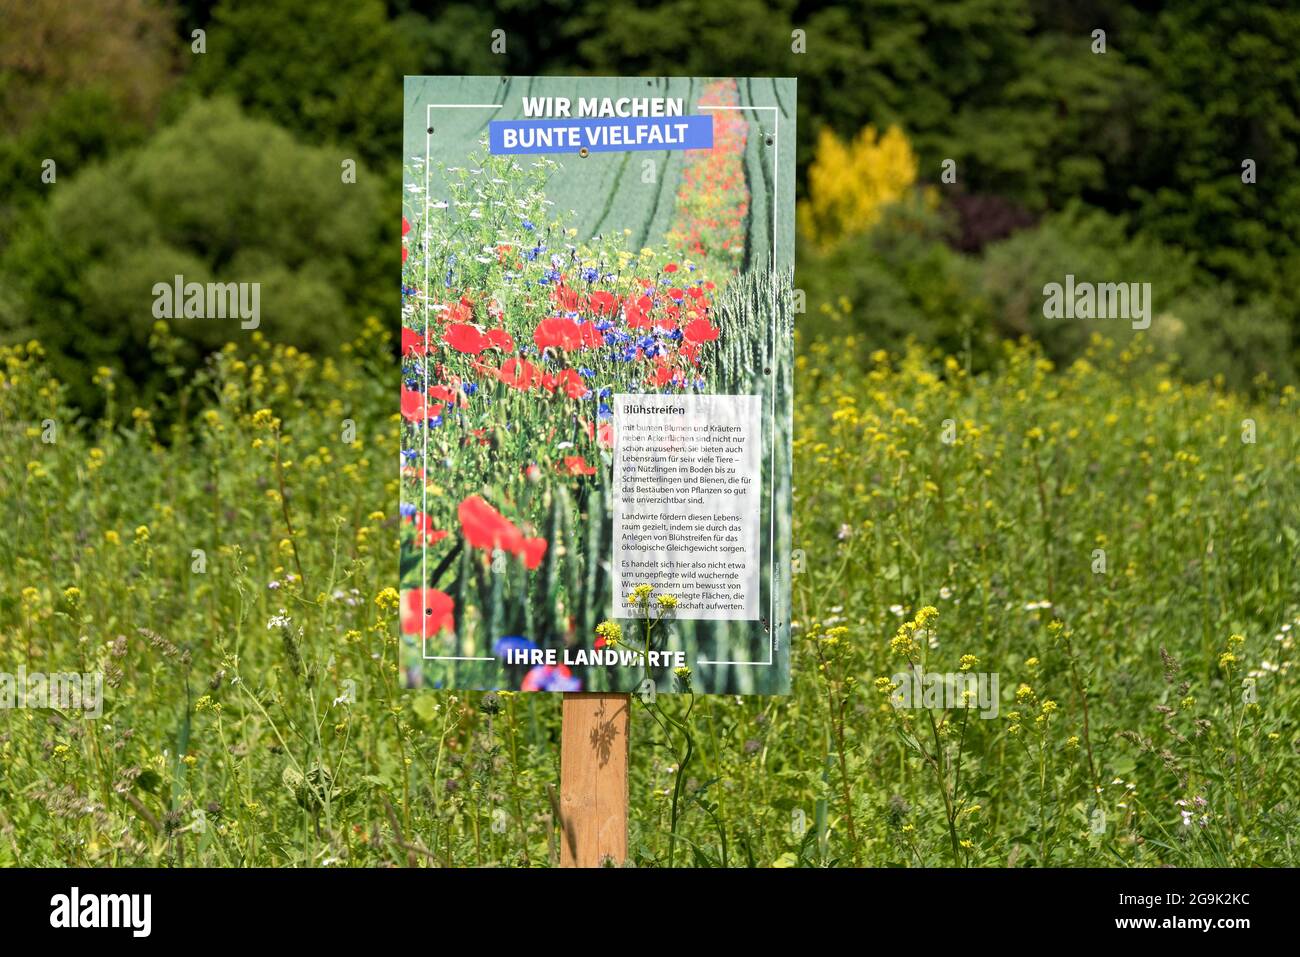 Blühstreifen als Lebensraum für Kleintiere und Insekten auf landwirtschaftlichem Boden mit Werbeplakat für bunte Vielfalt, Deutschland Stockfoto